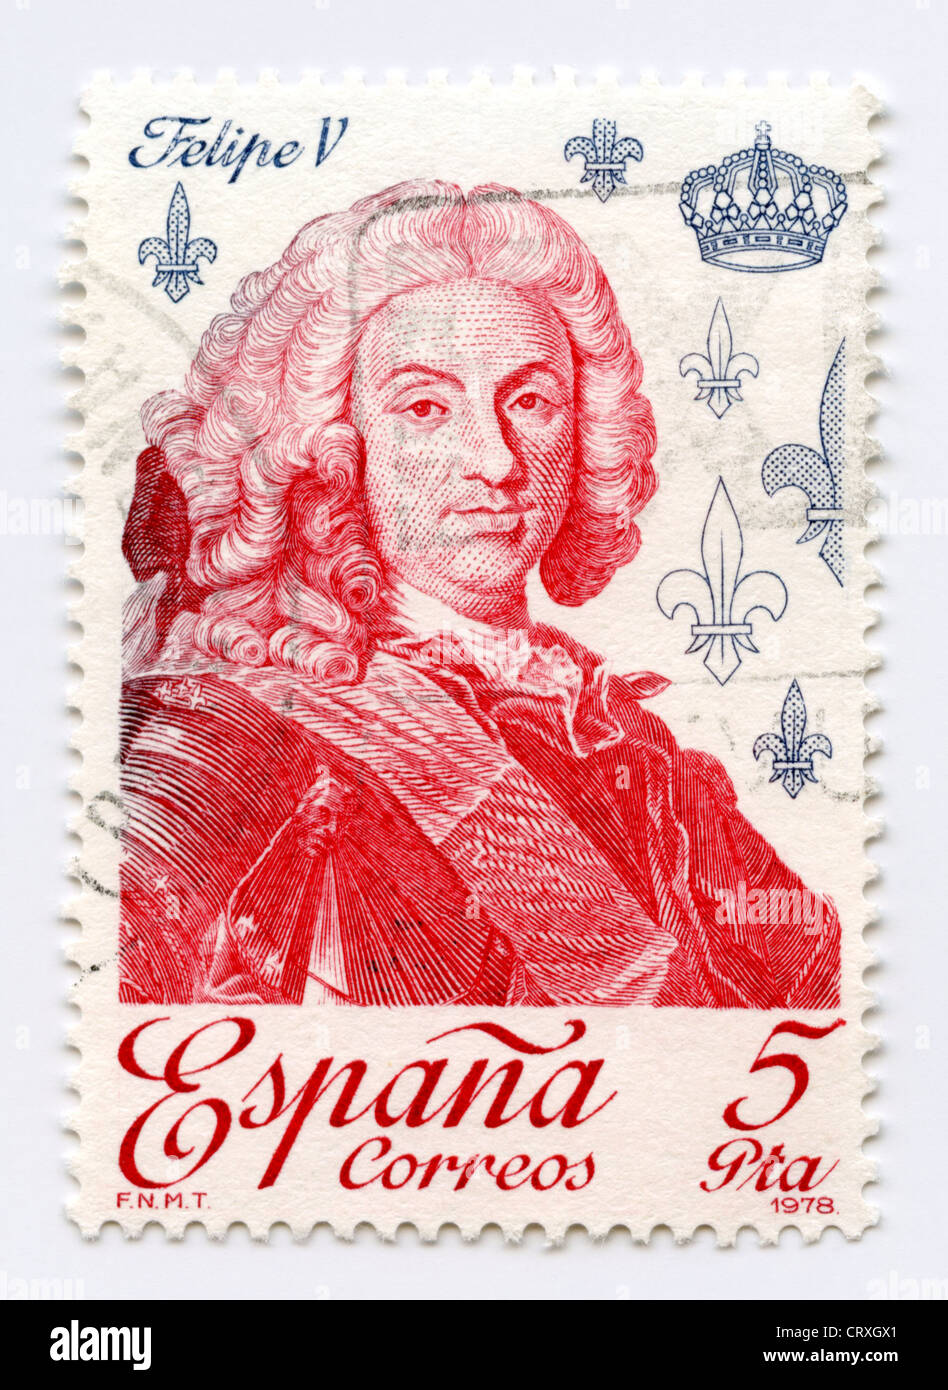 Spain postage stamp - king Philip V of Spain - Felipe V Stock Photo